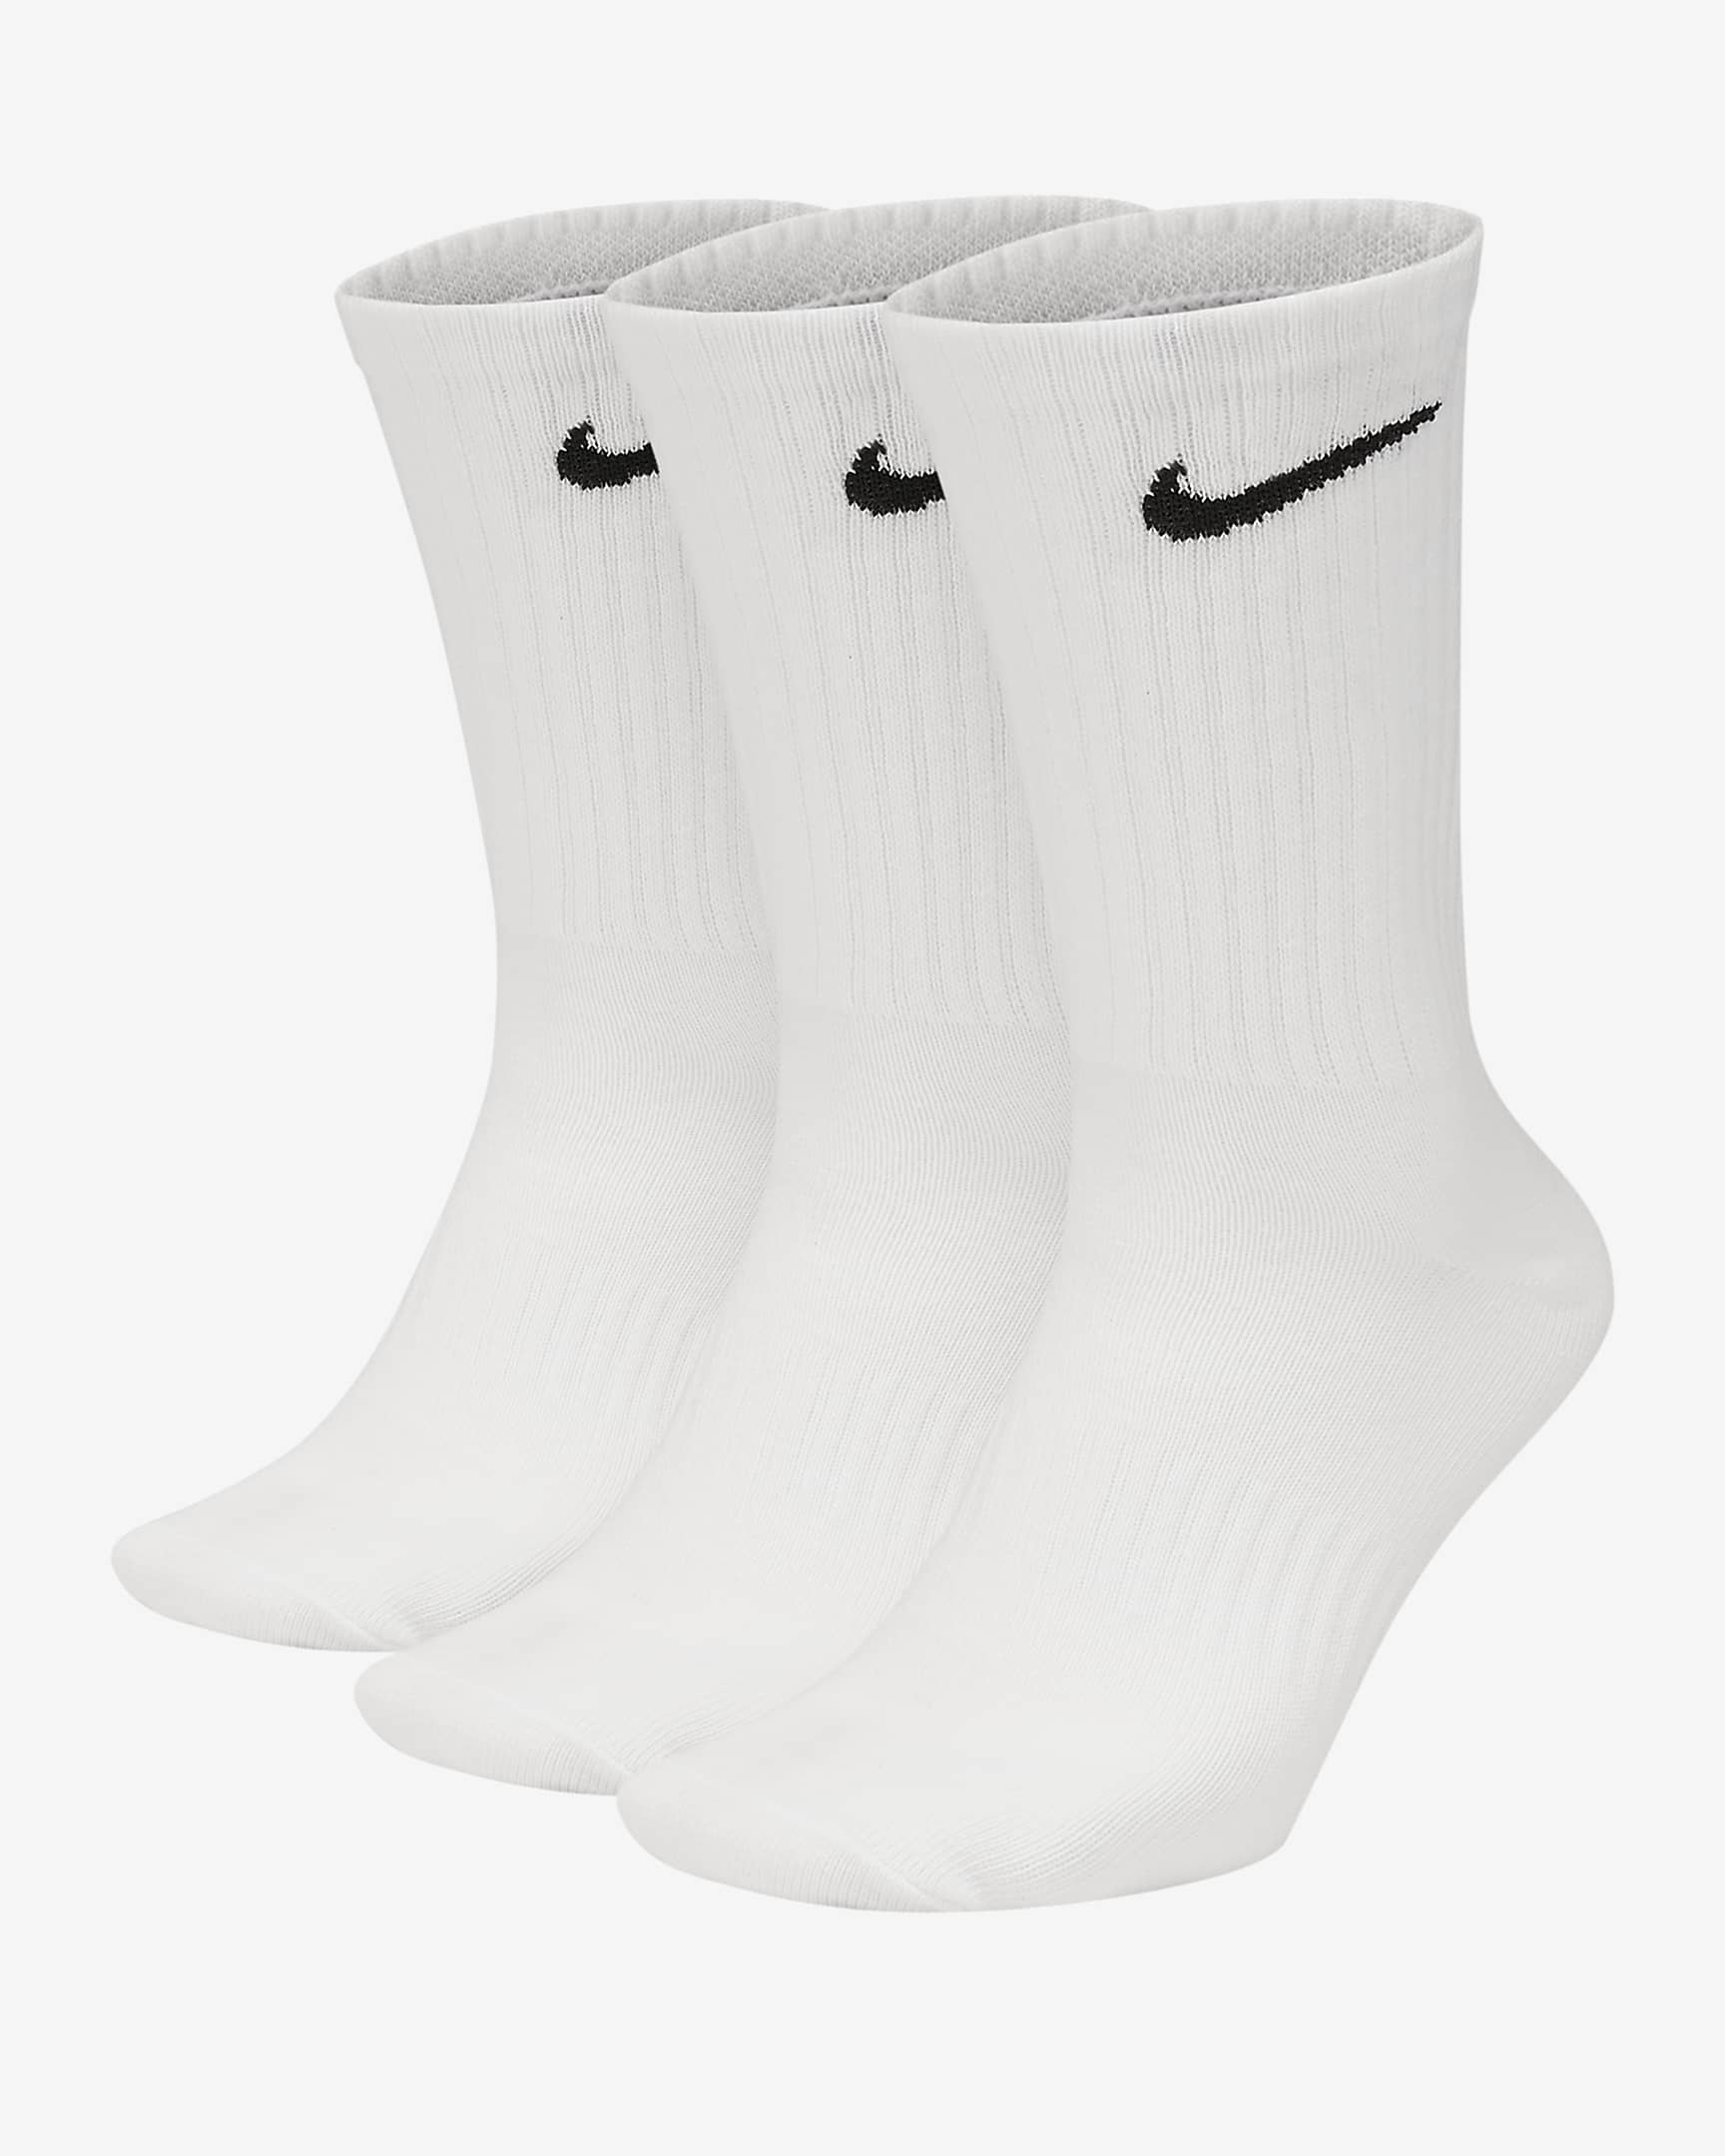 Nike Everyday Lightweight Training Crew Socks (3 Pairs) - White/Black